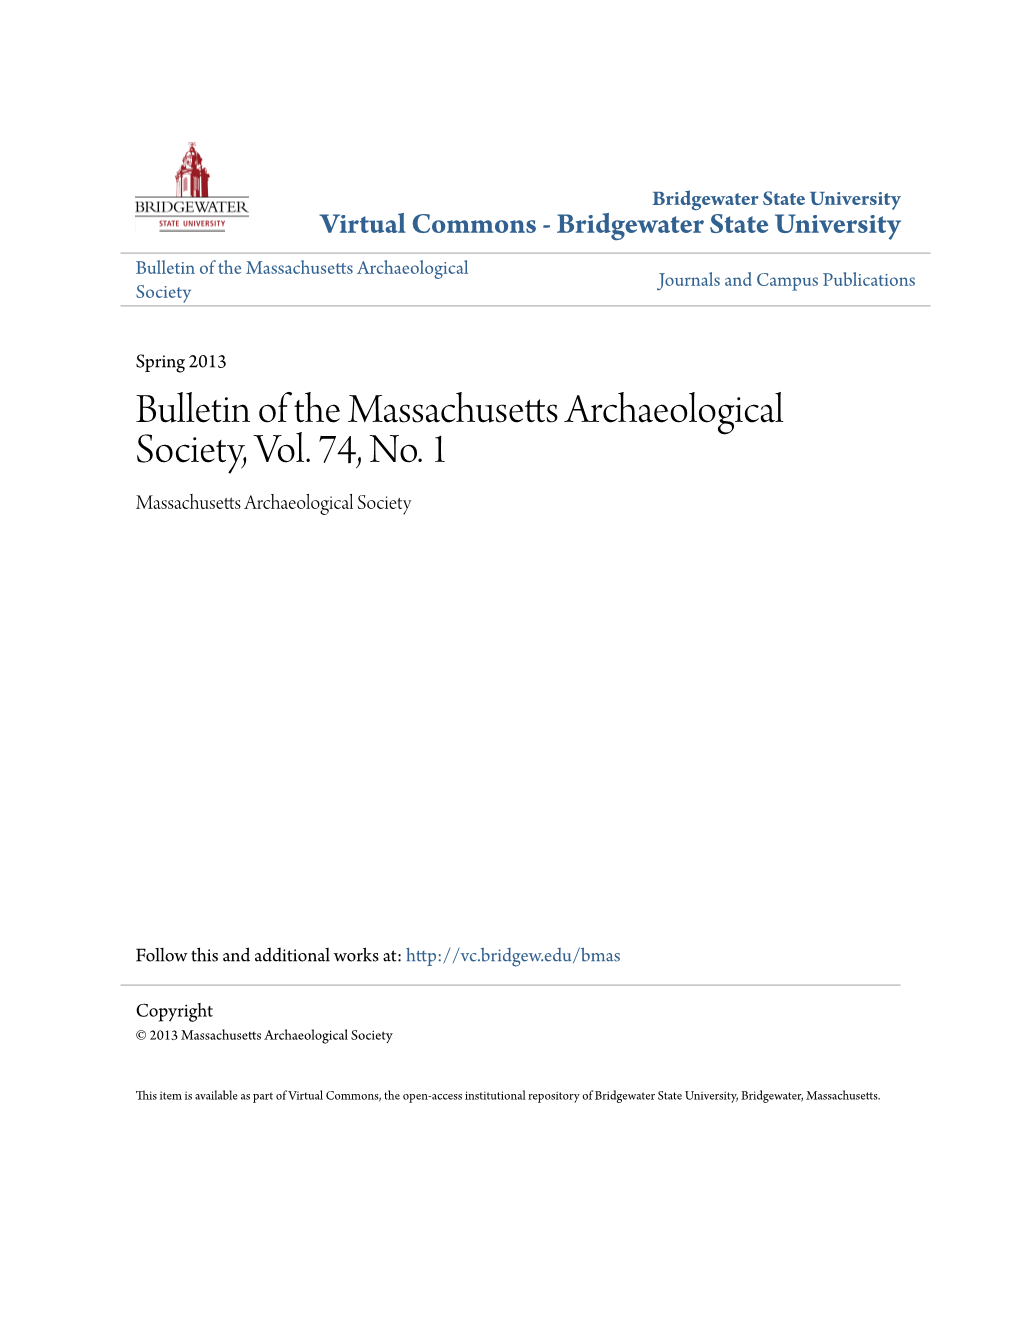 Bulletin of the Massachusetts Archaeological Society, Vol. 74, No. 1 Massachusetts Archaeological Society